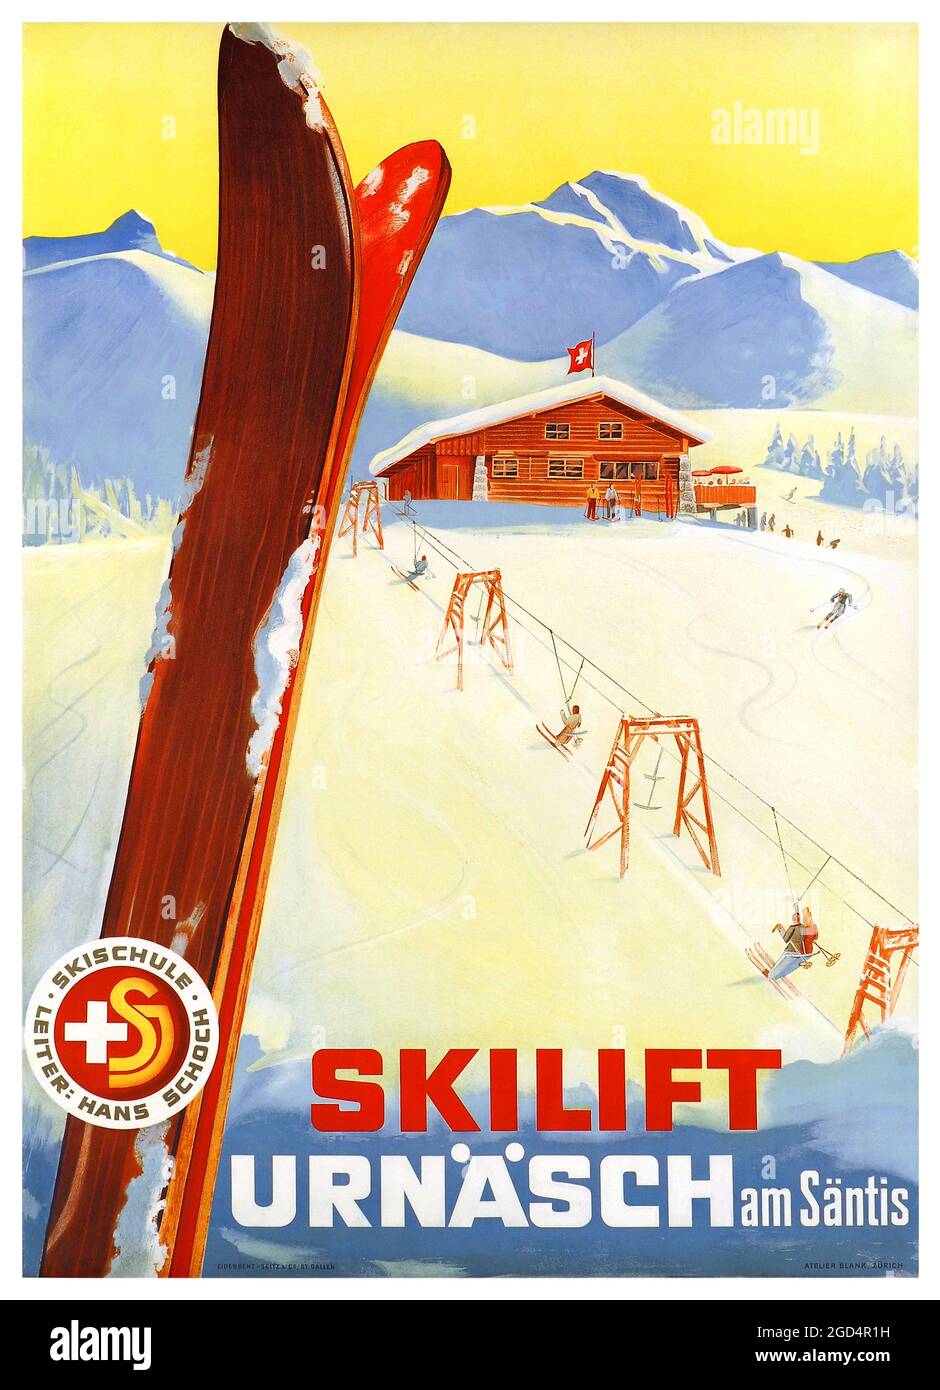 Skilift Urnäsch am Säntis. Skischule Leiter, Hans Schoch. Eidenbenz-Seitz &  Co, St Gallen Atelier Blank, Zürich. Restored vintage poster published in  1944 in Switzerland Stock Photo - Alamy